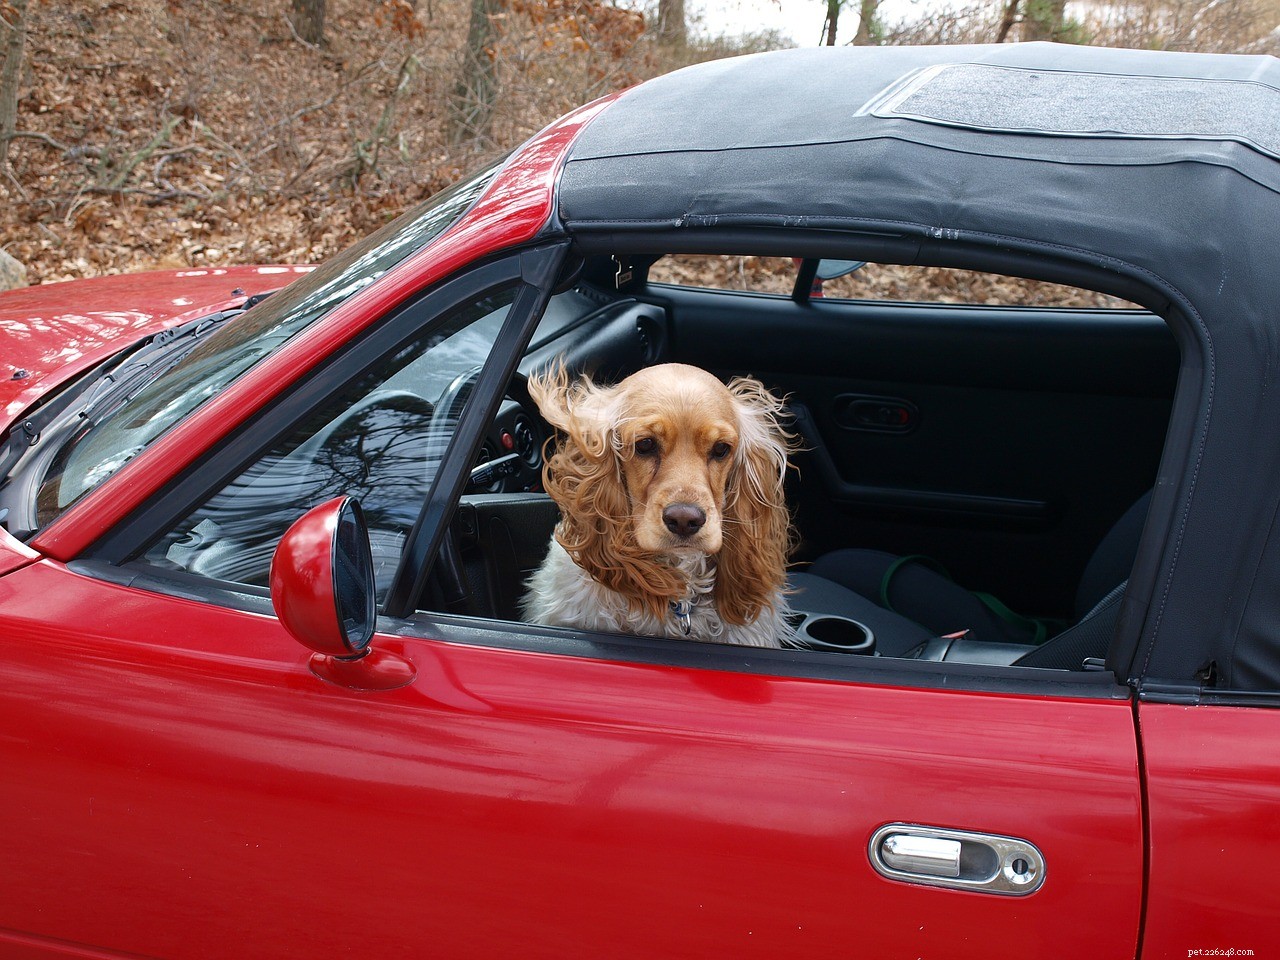 개와 함께 운전하기 – 자동차에 적합한 장비